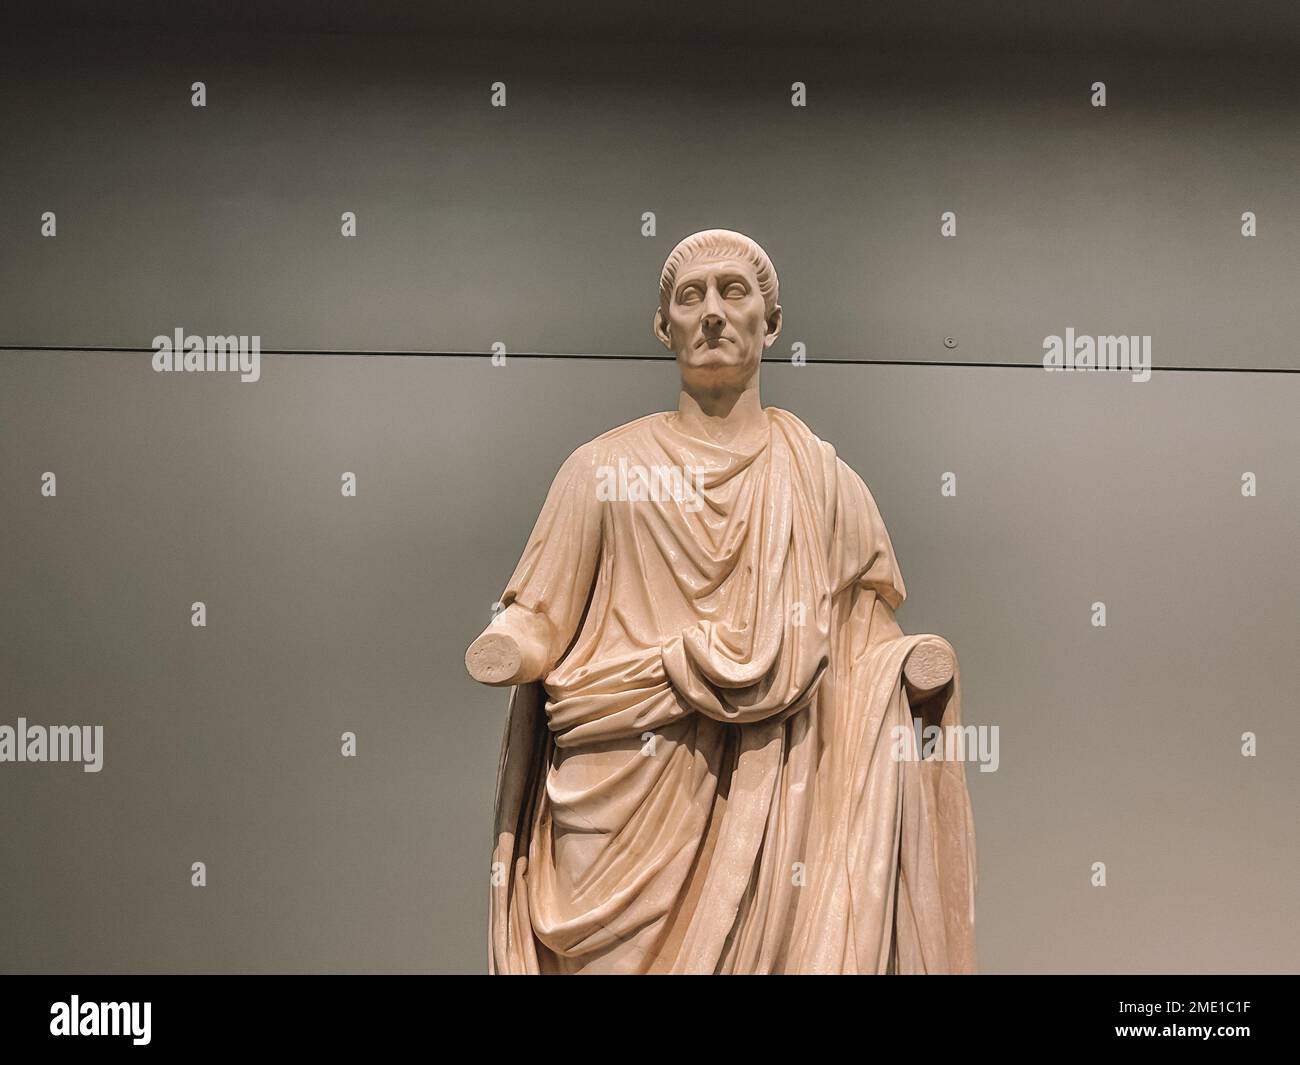 Arte europeo antiguo - estatua vintage y pinturas expuestas en un museo - Museo del Louvre Abu Dhabi Foto de stock